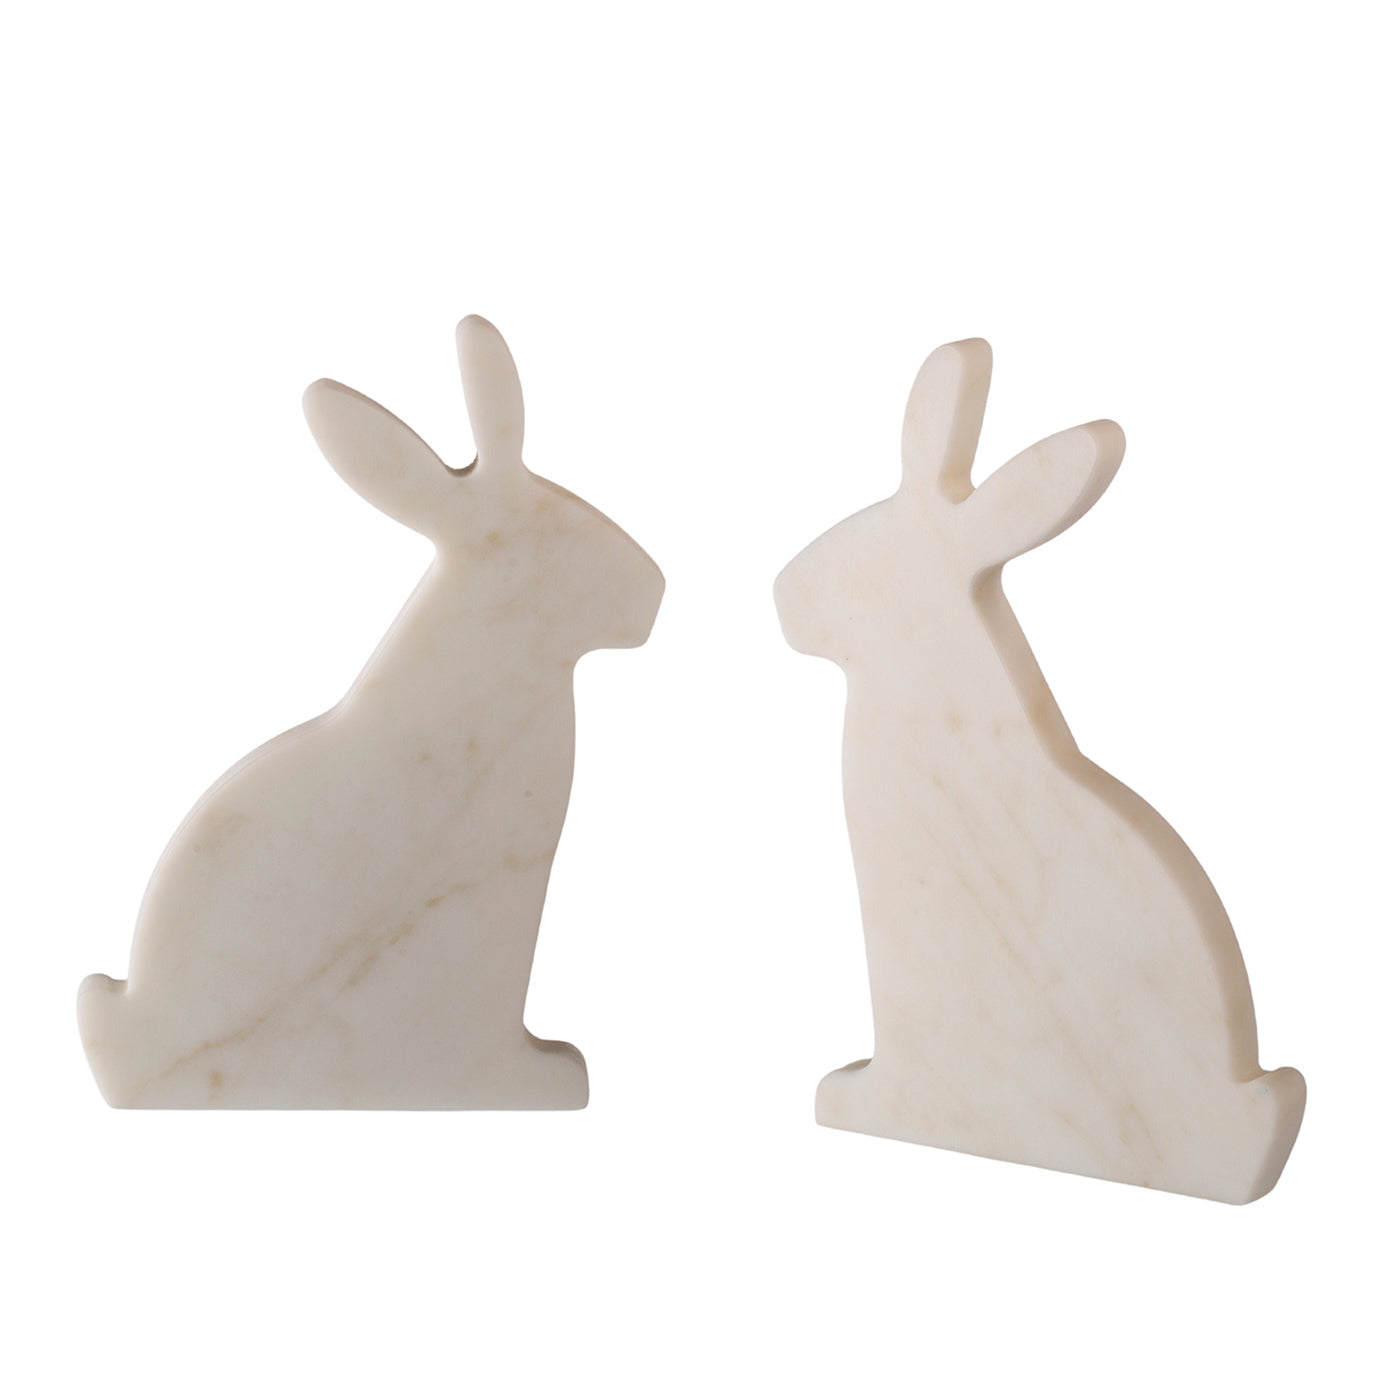 Juego de 2 sujetalibros de carrara blanca Bunny by Alessandra Grasso - Vista alternativa 3